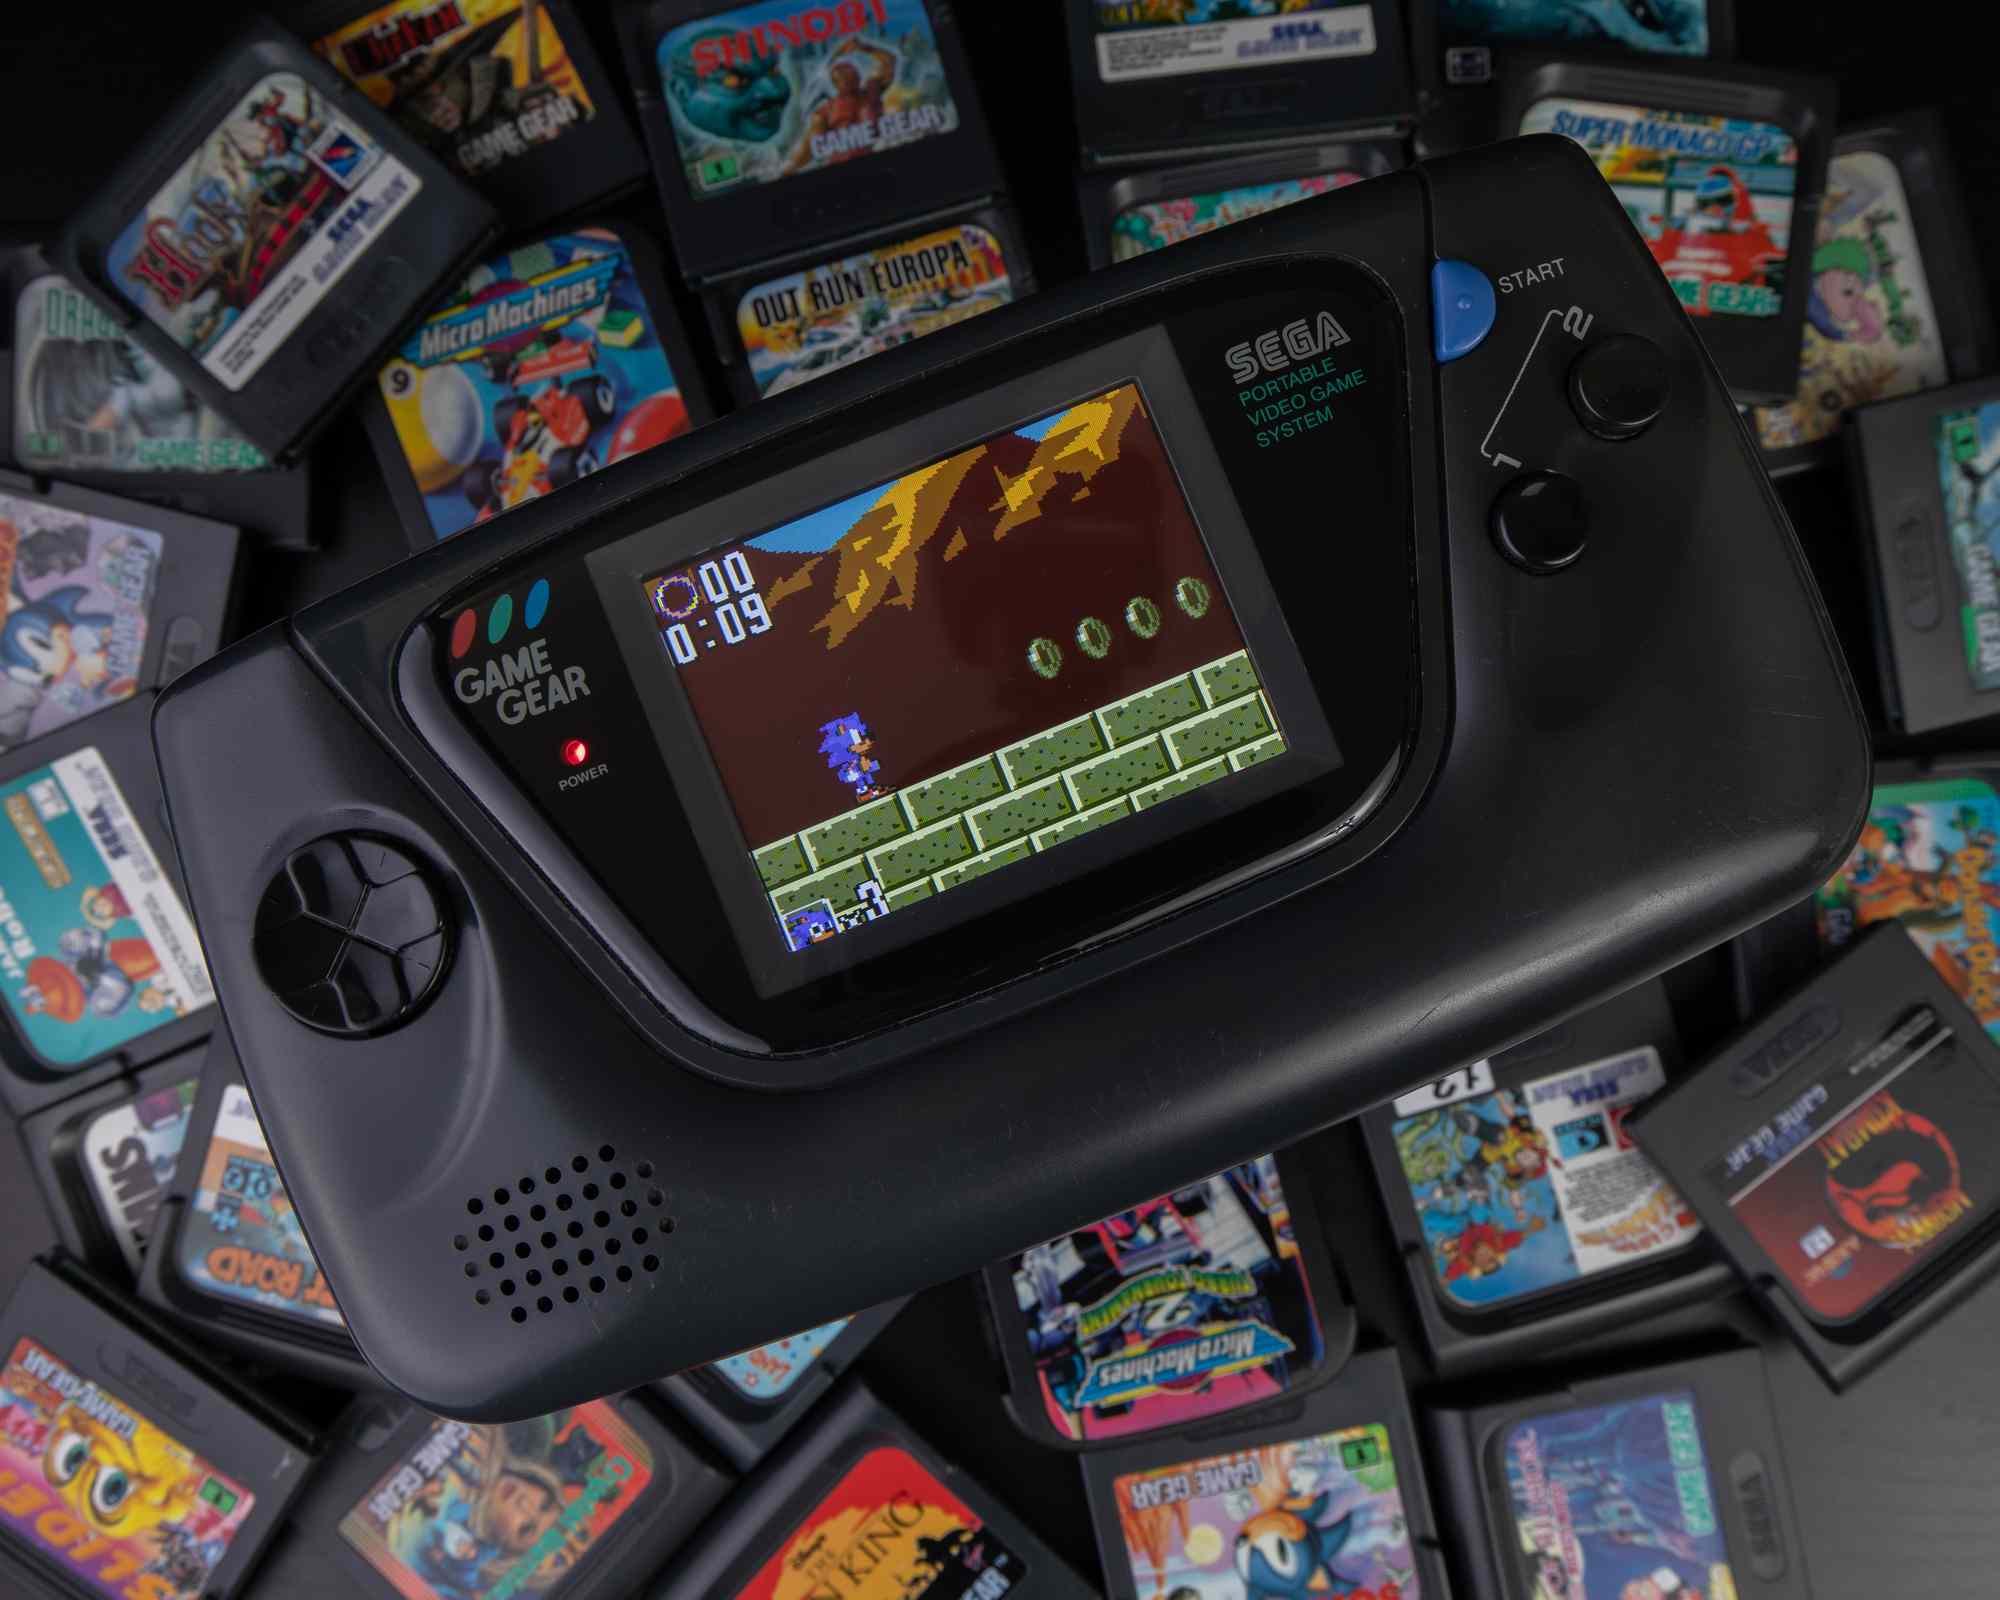 Konzole Sega obklopená herními kazetami.